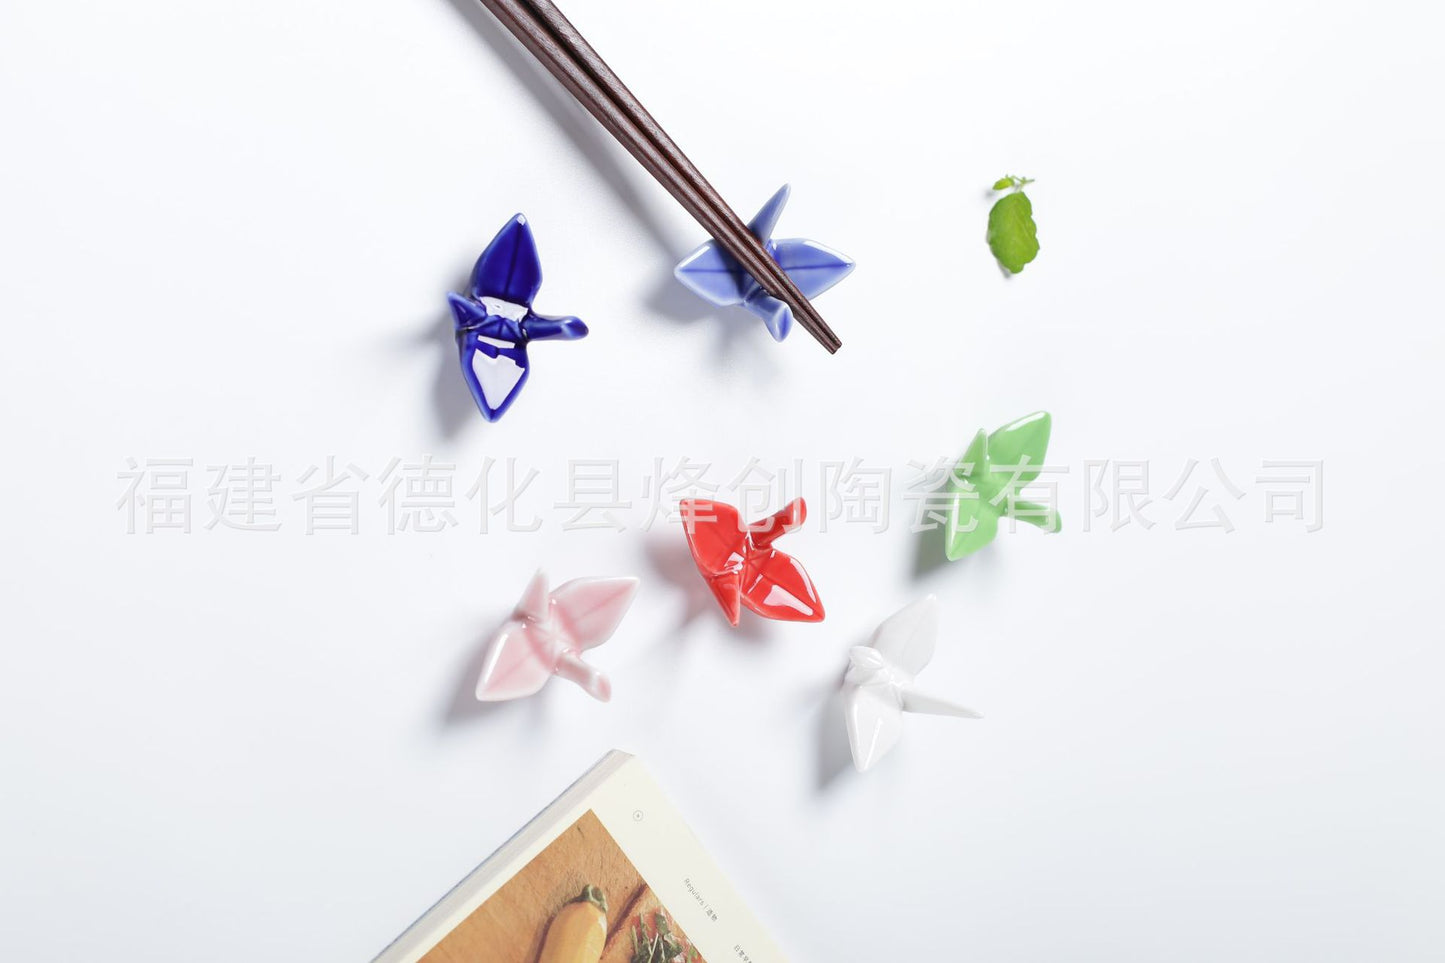 Gohobi Paper Cranes Chopstick Rest